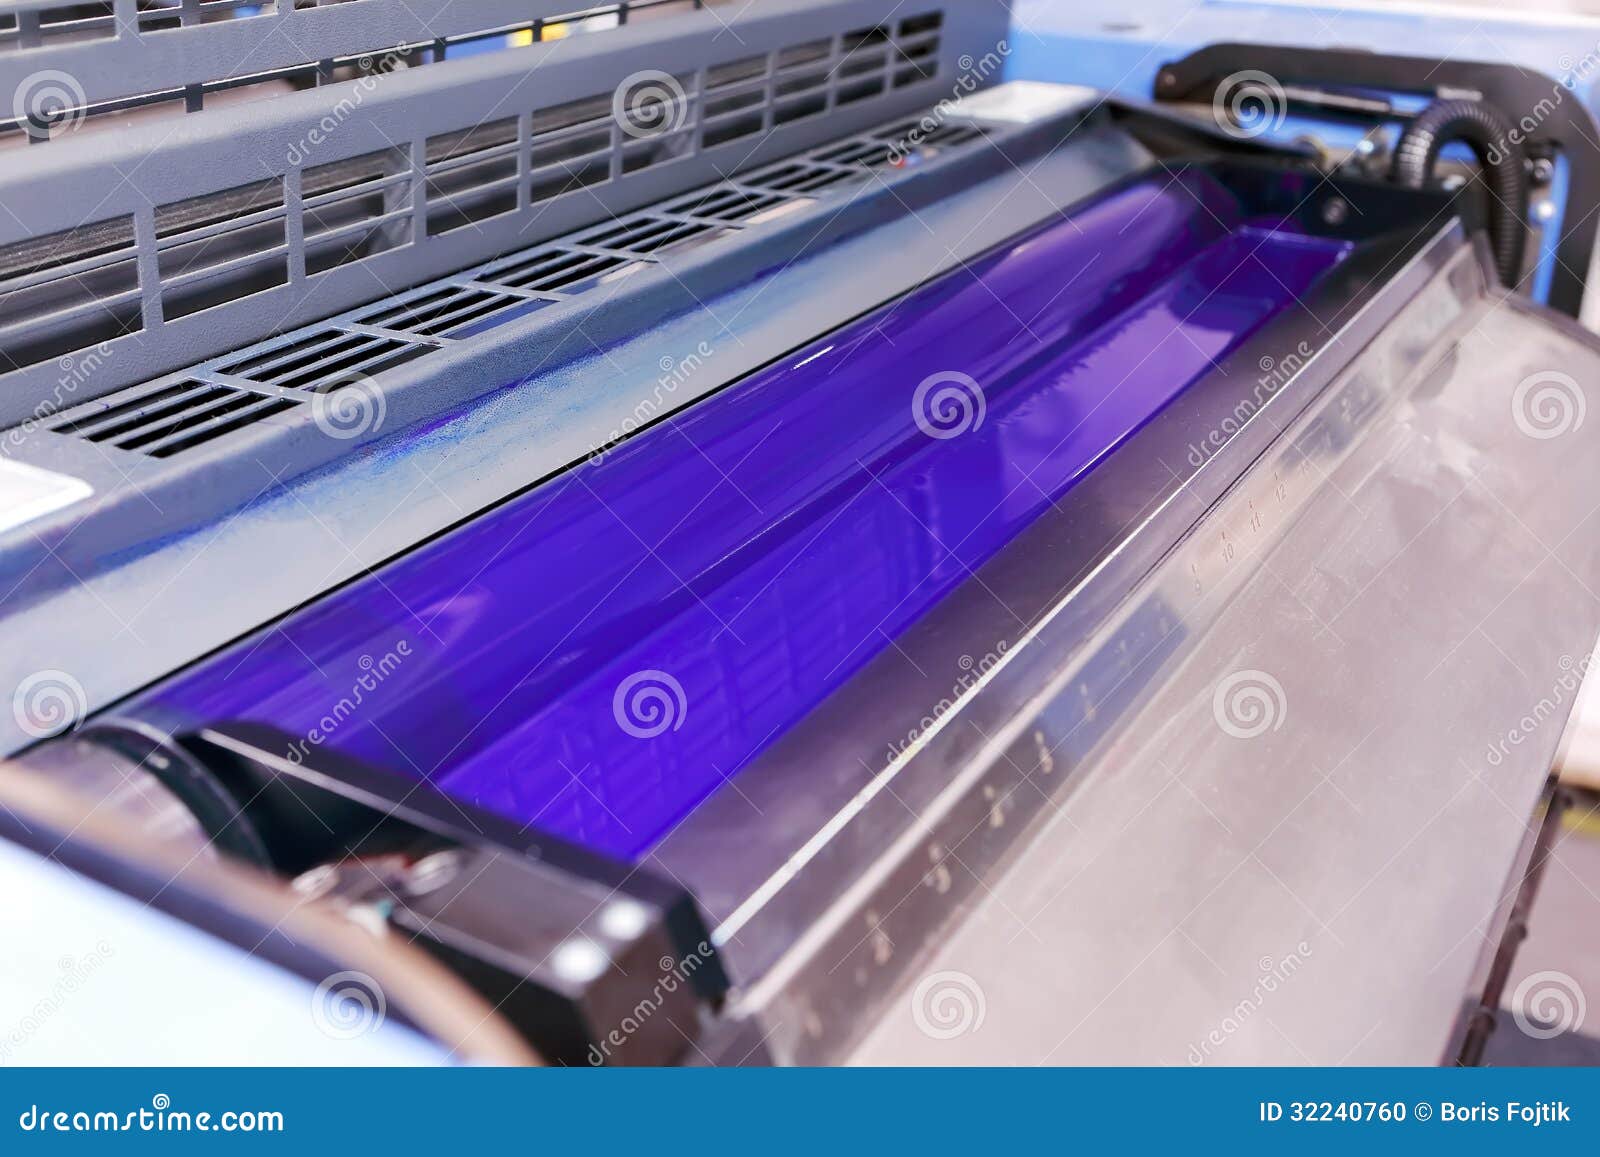 offset printing machine - cyan ink